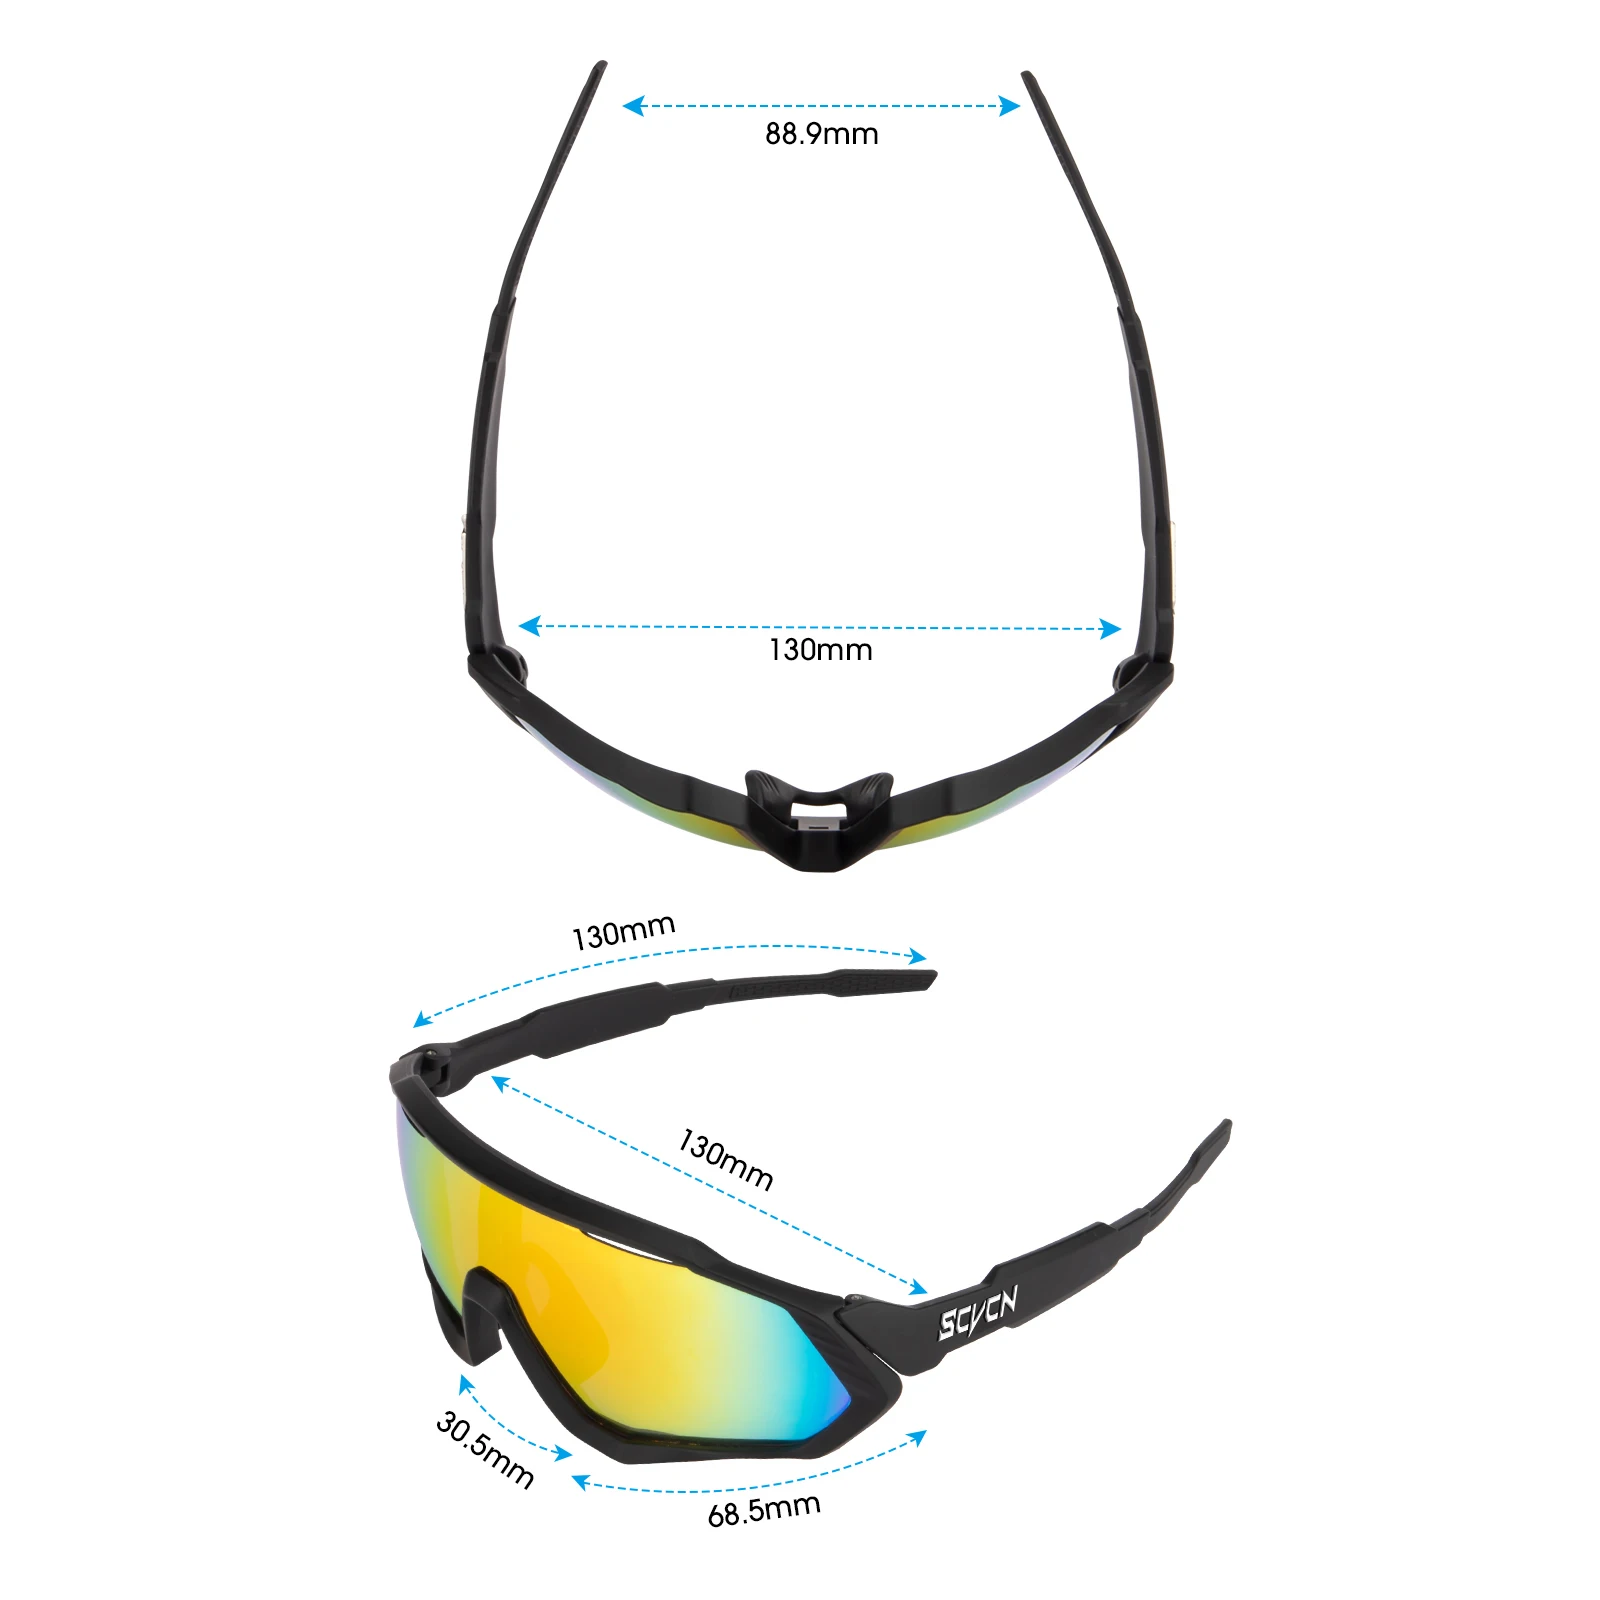 SCVCN Велосипедни Очила на Мъже, Жени МТБ Очила за Планинските пътища на Състезателни велосипеди Вело Слънчеви очила с UV400 За спорт на открито Очила за шофиране